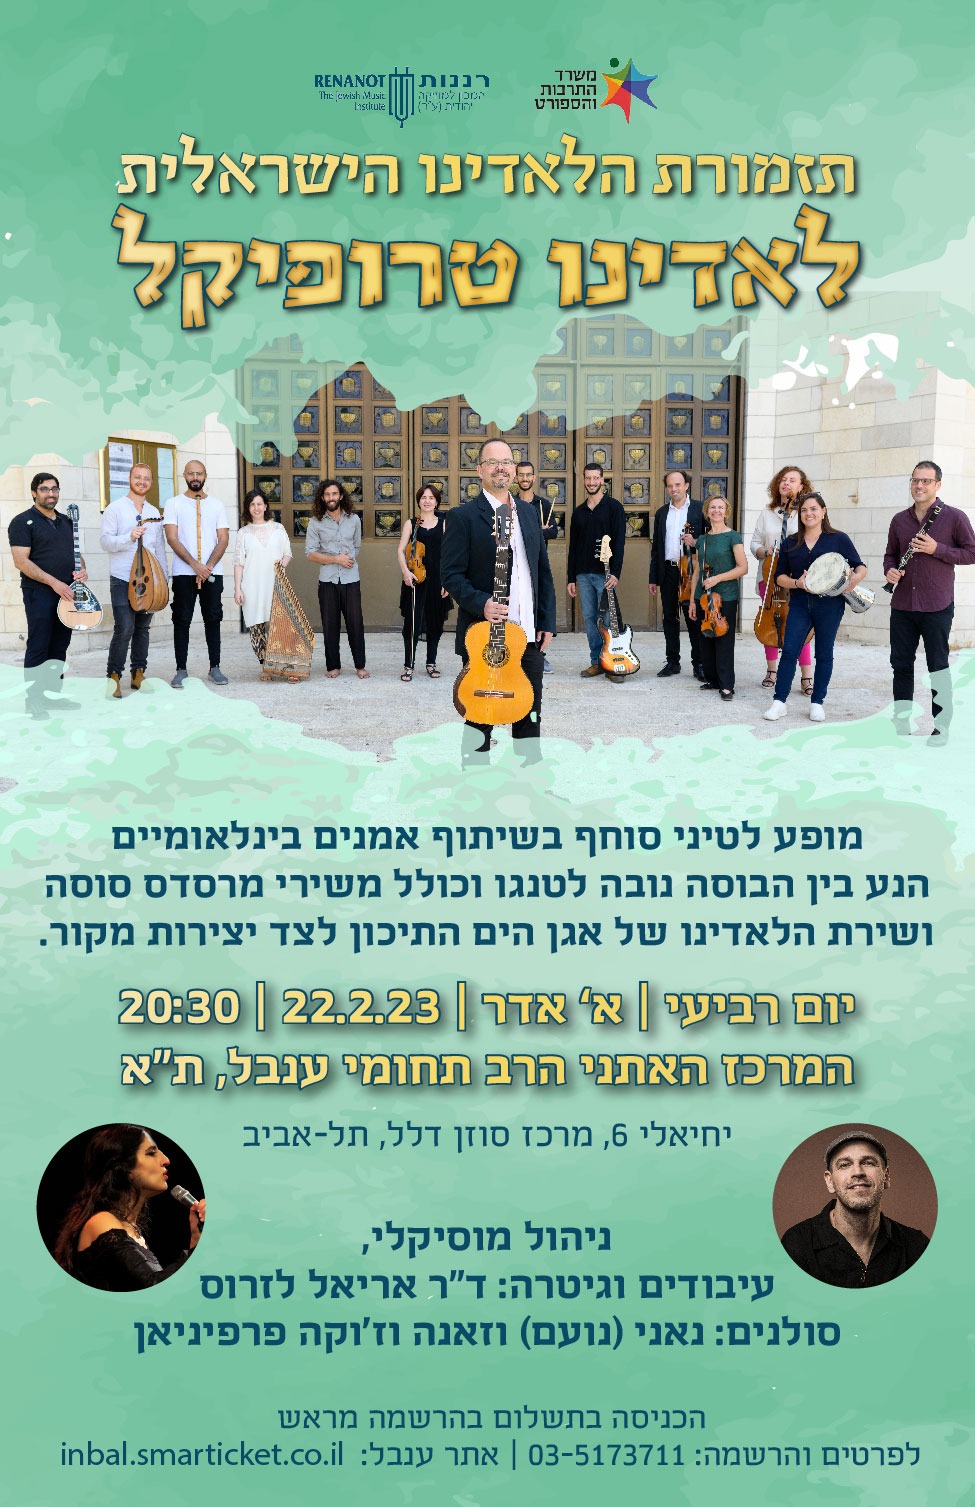 תזמורת הלאדינו הישראלית במופע "לאדינו טרופיקל" בת"א